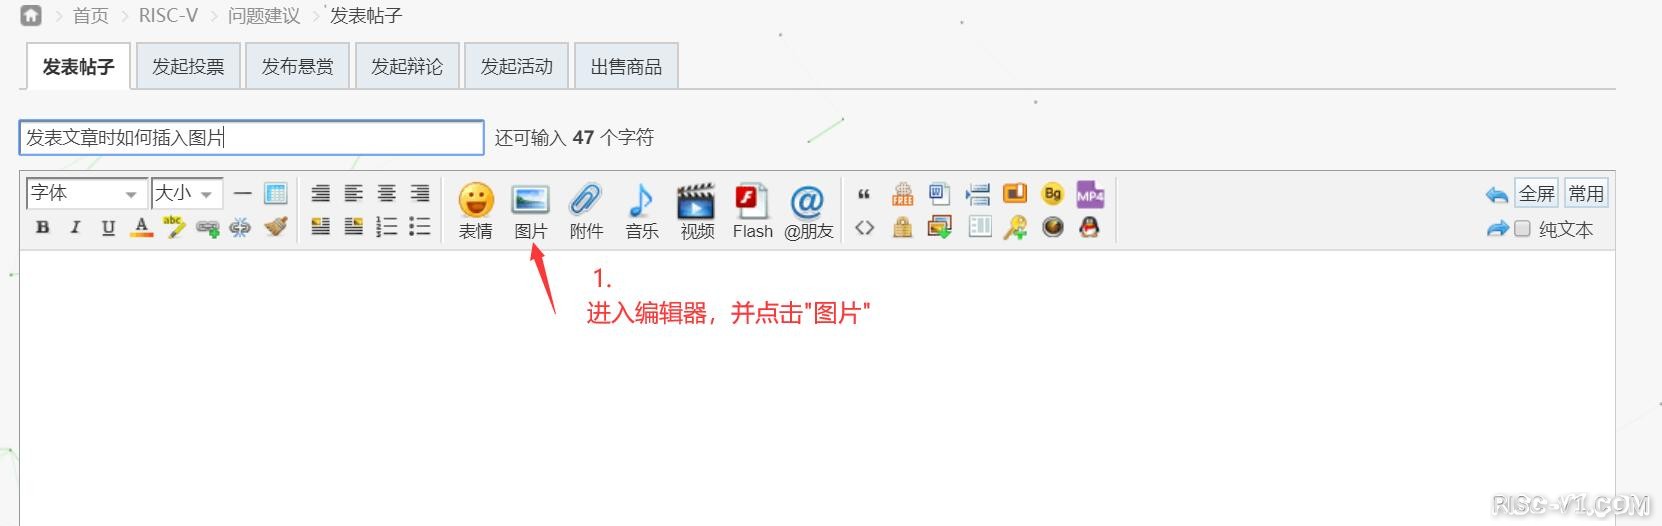 社区公告-发表文章时如何插入图片risc-v单片机中文社区(1)